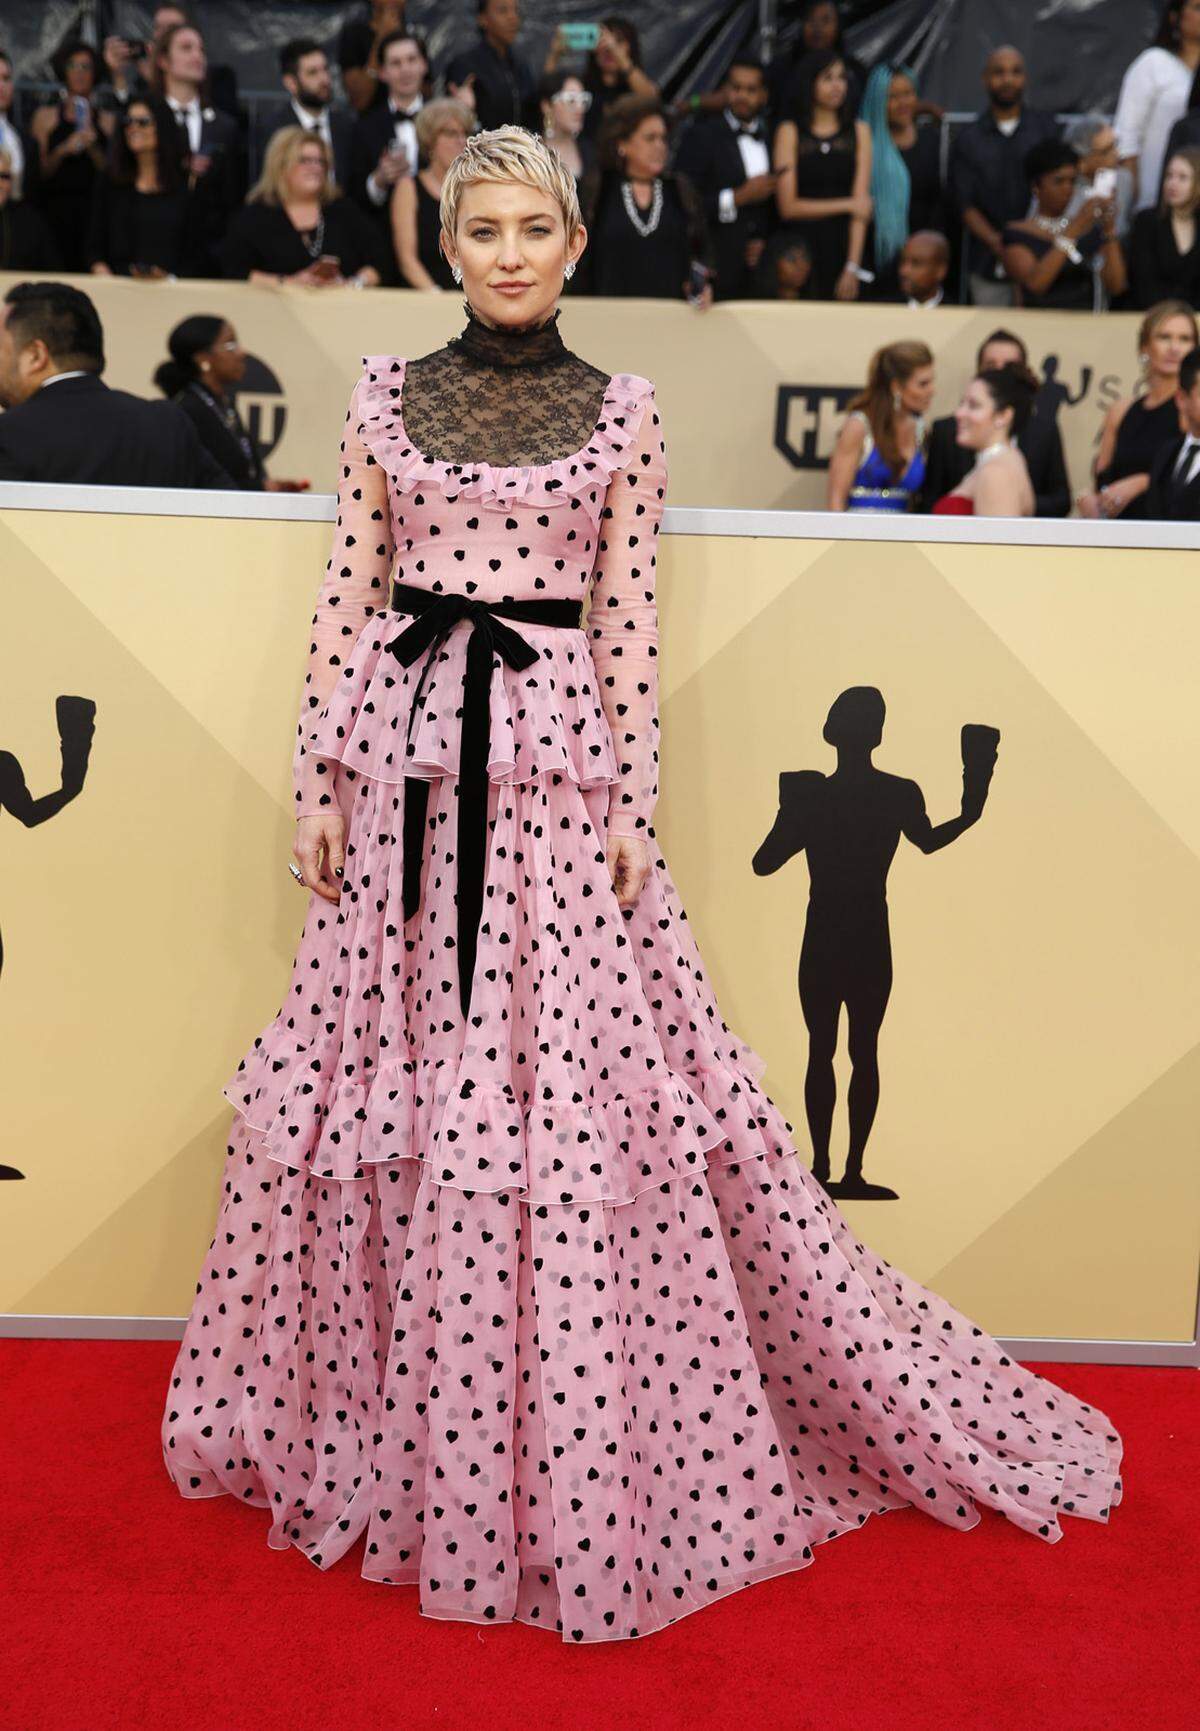 Ohne Spitzenrollkragen hätte das Valentino-Kleid Kate Hudson noch besser gepasst.